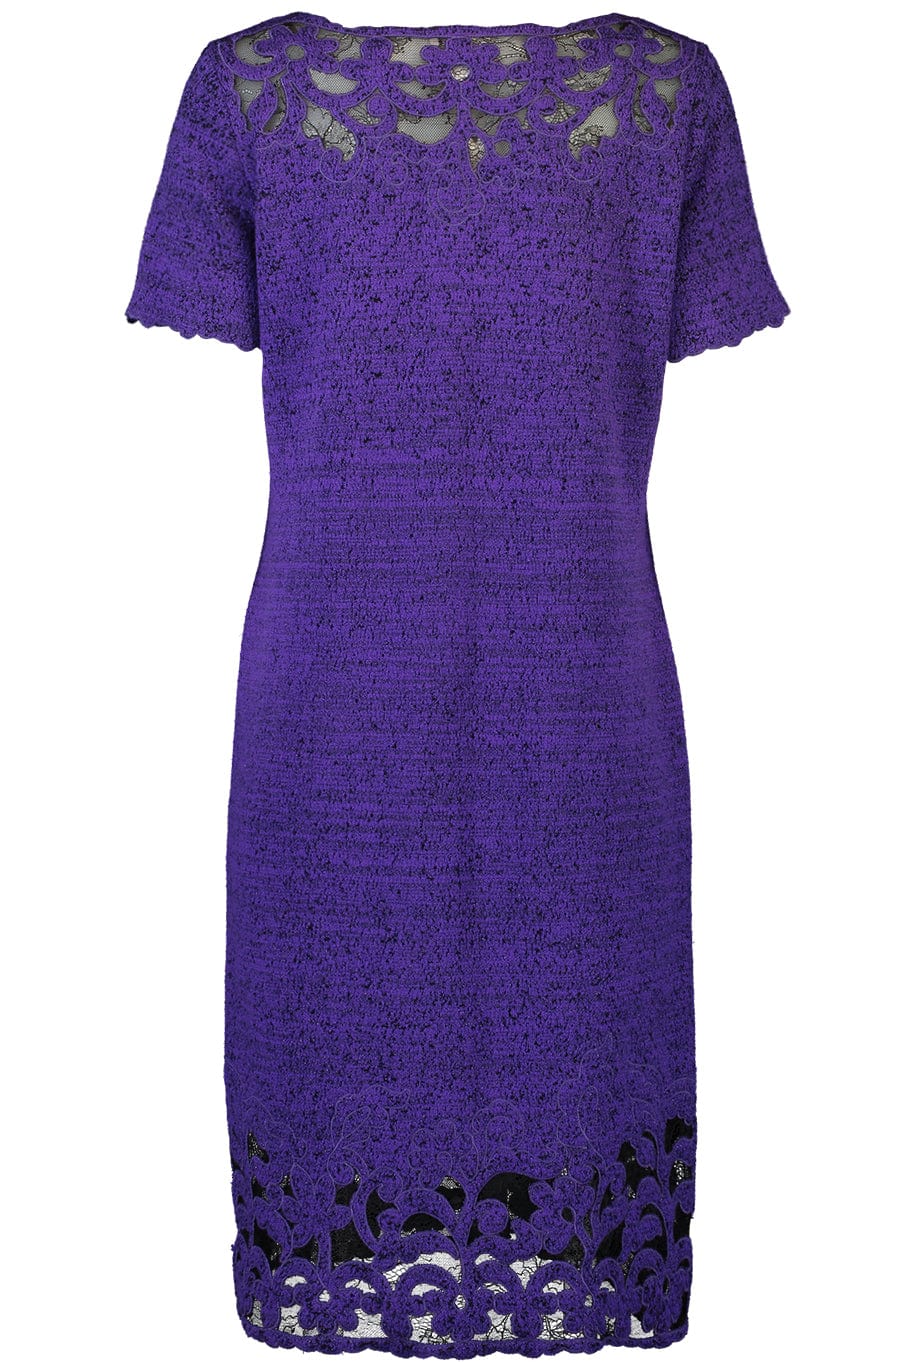 OSCAR DE LA RENTA-Short Sleeve Wool Dress-PURPLE